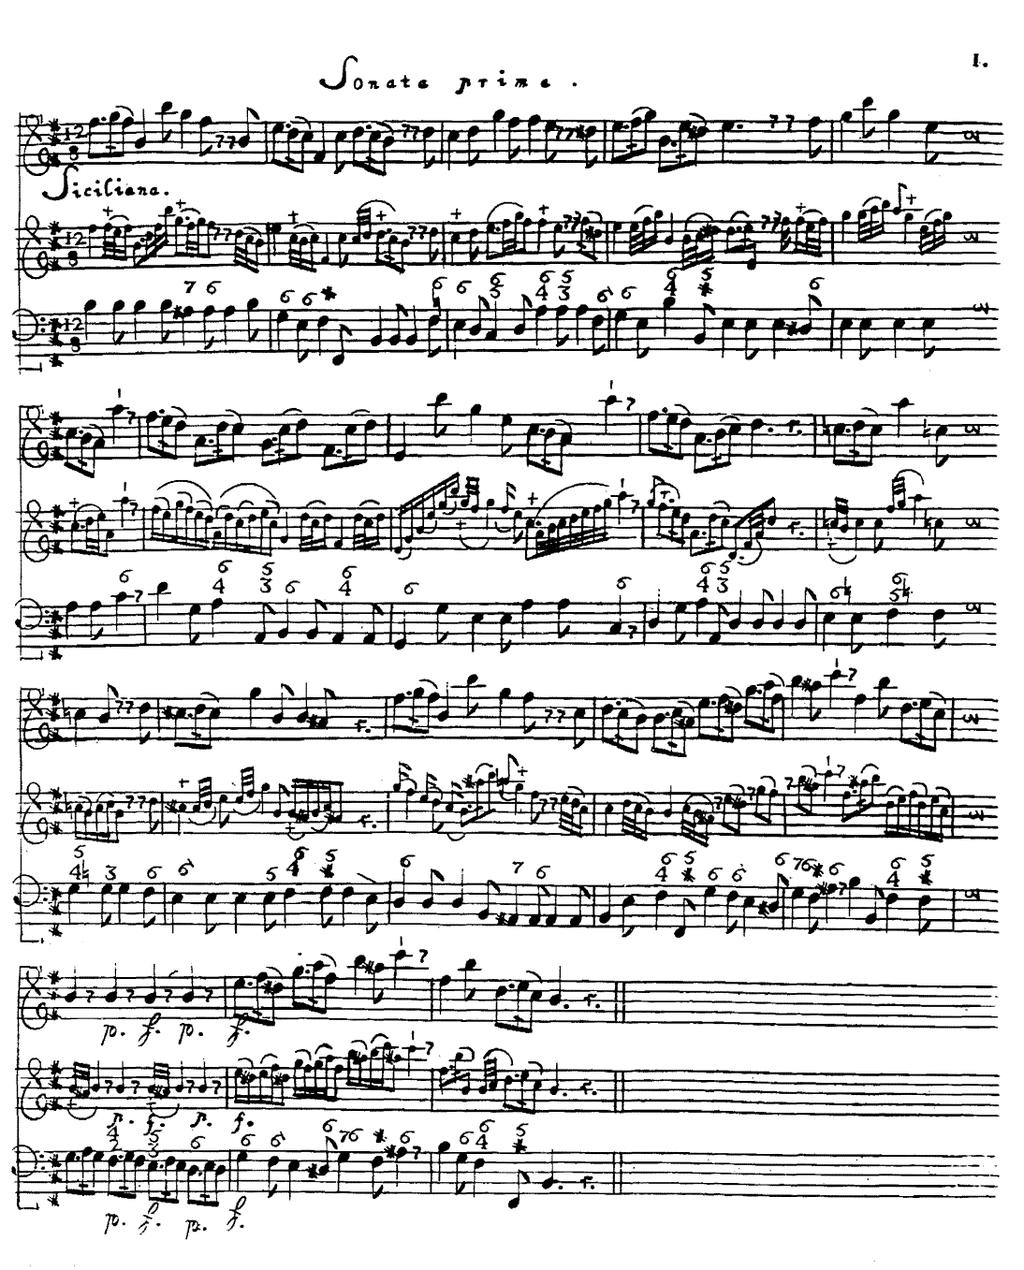 Bilaga 6 Telemann metodiska sonater: sonata 1 sats 1 (1732) (hämtad från http://burrito.